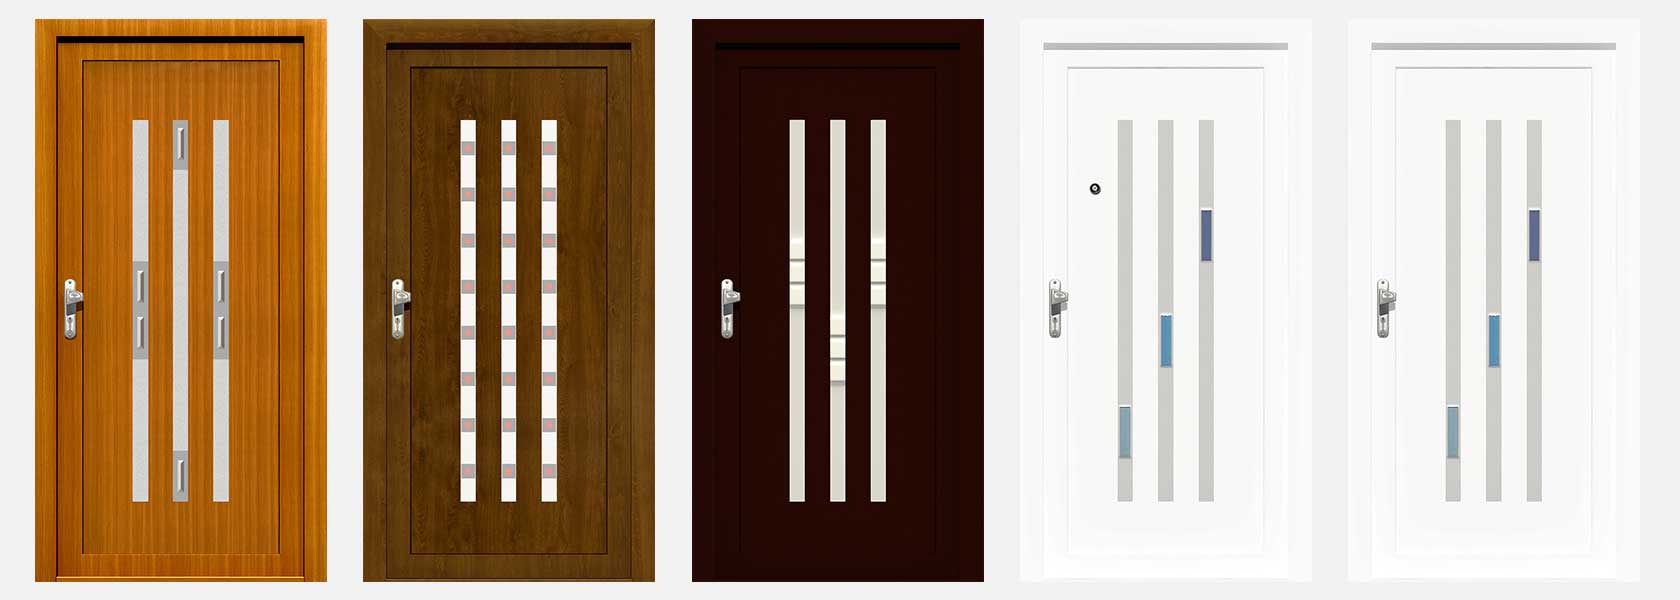 Panele do drzwi, panele drzwiowe hpl, panele drzwiowe aluminiowe